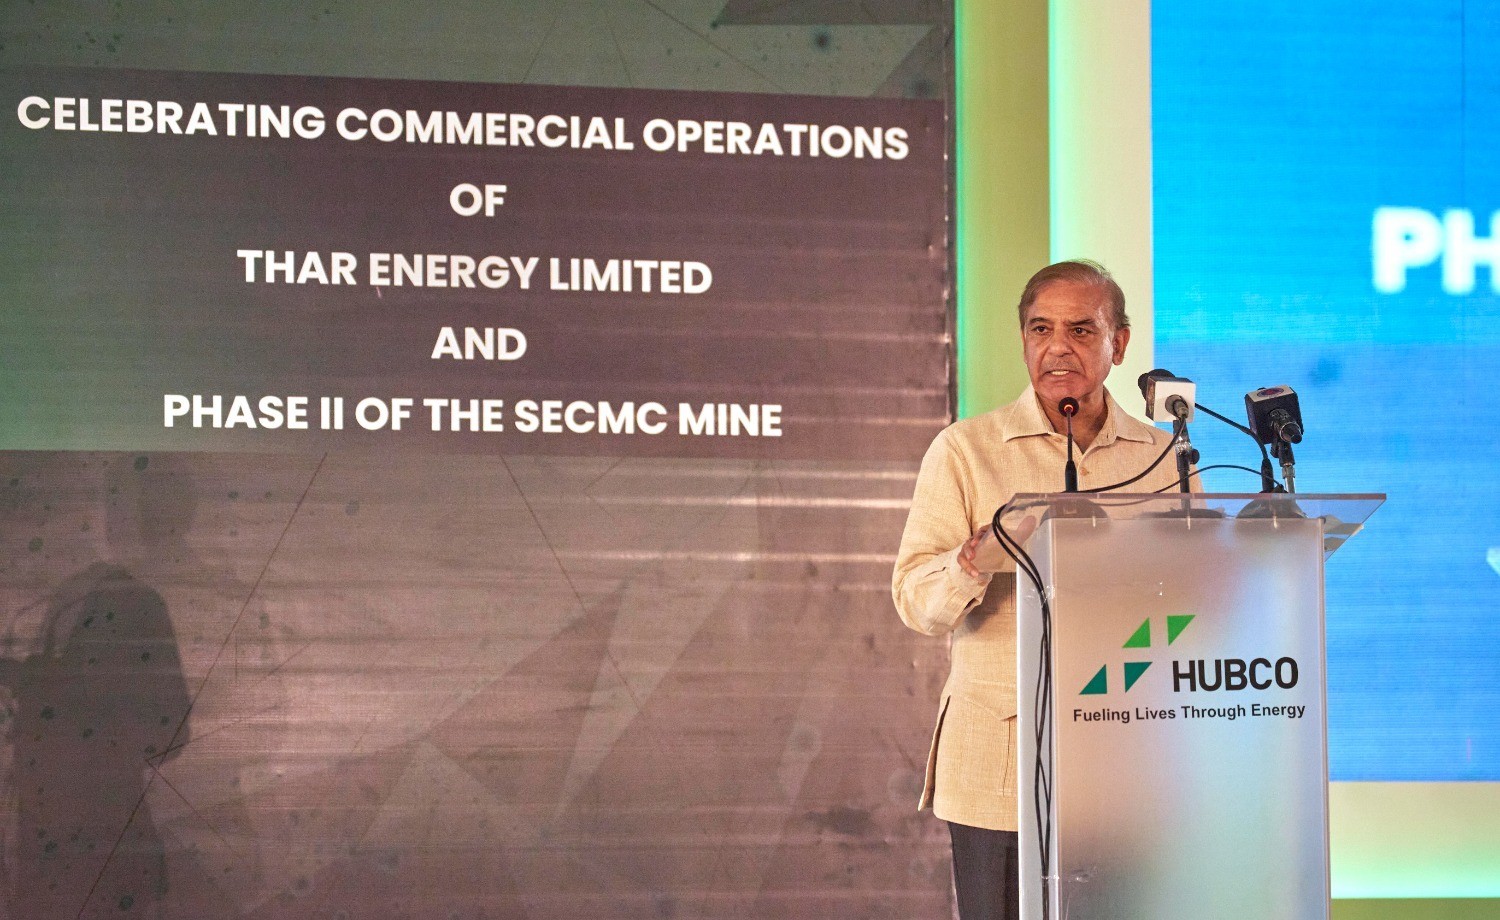 巴基斯坦塔爾二區塊二期煤電一體化專案投入商業運行